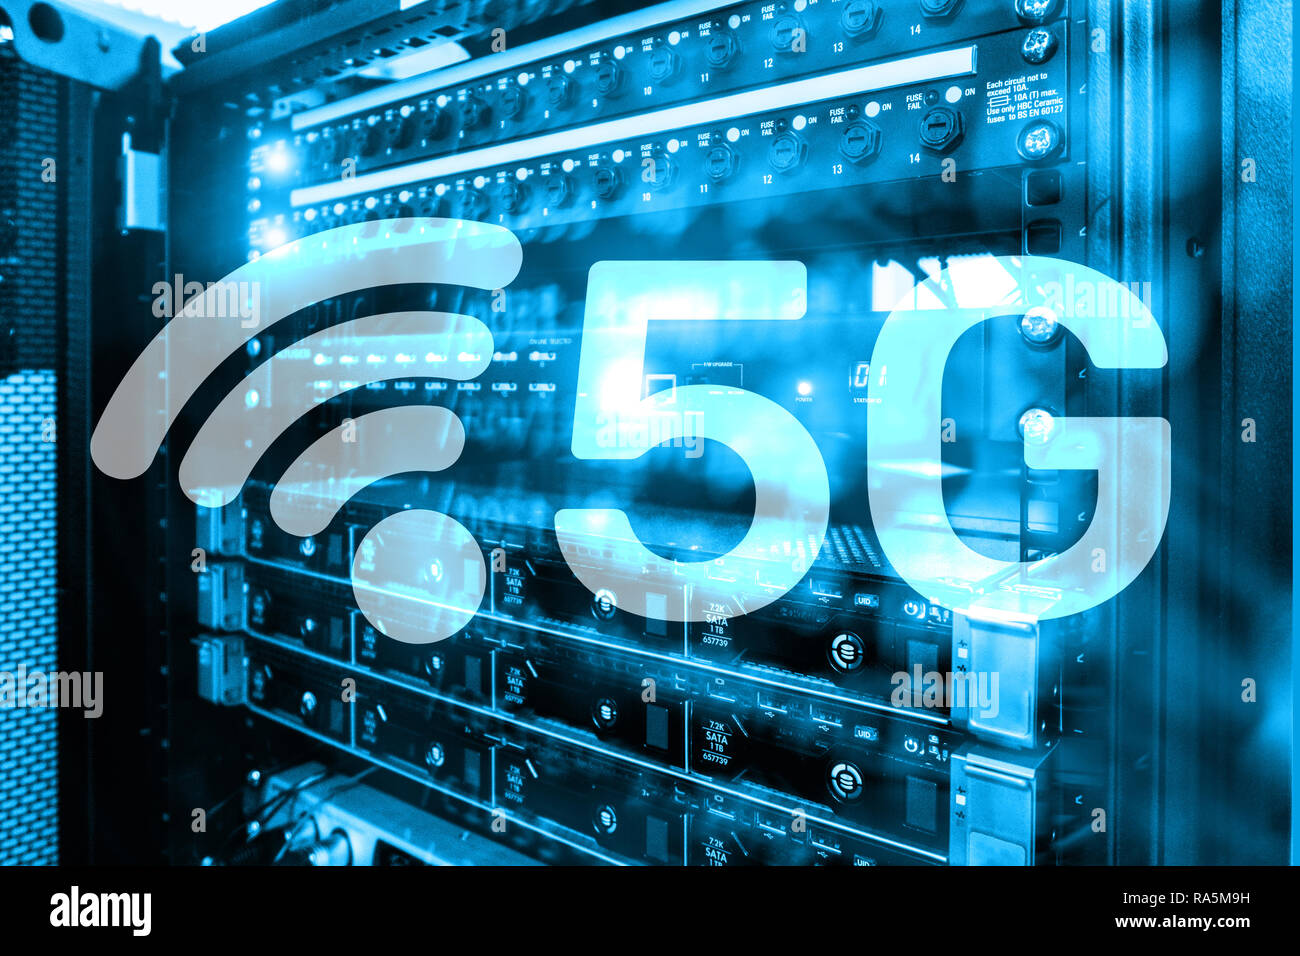 5G La connexion internet sans fil rapide des technologies mobiles de communication concept. La technologie des communications futures Banque D'Images